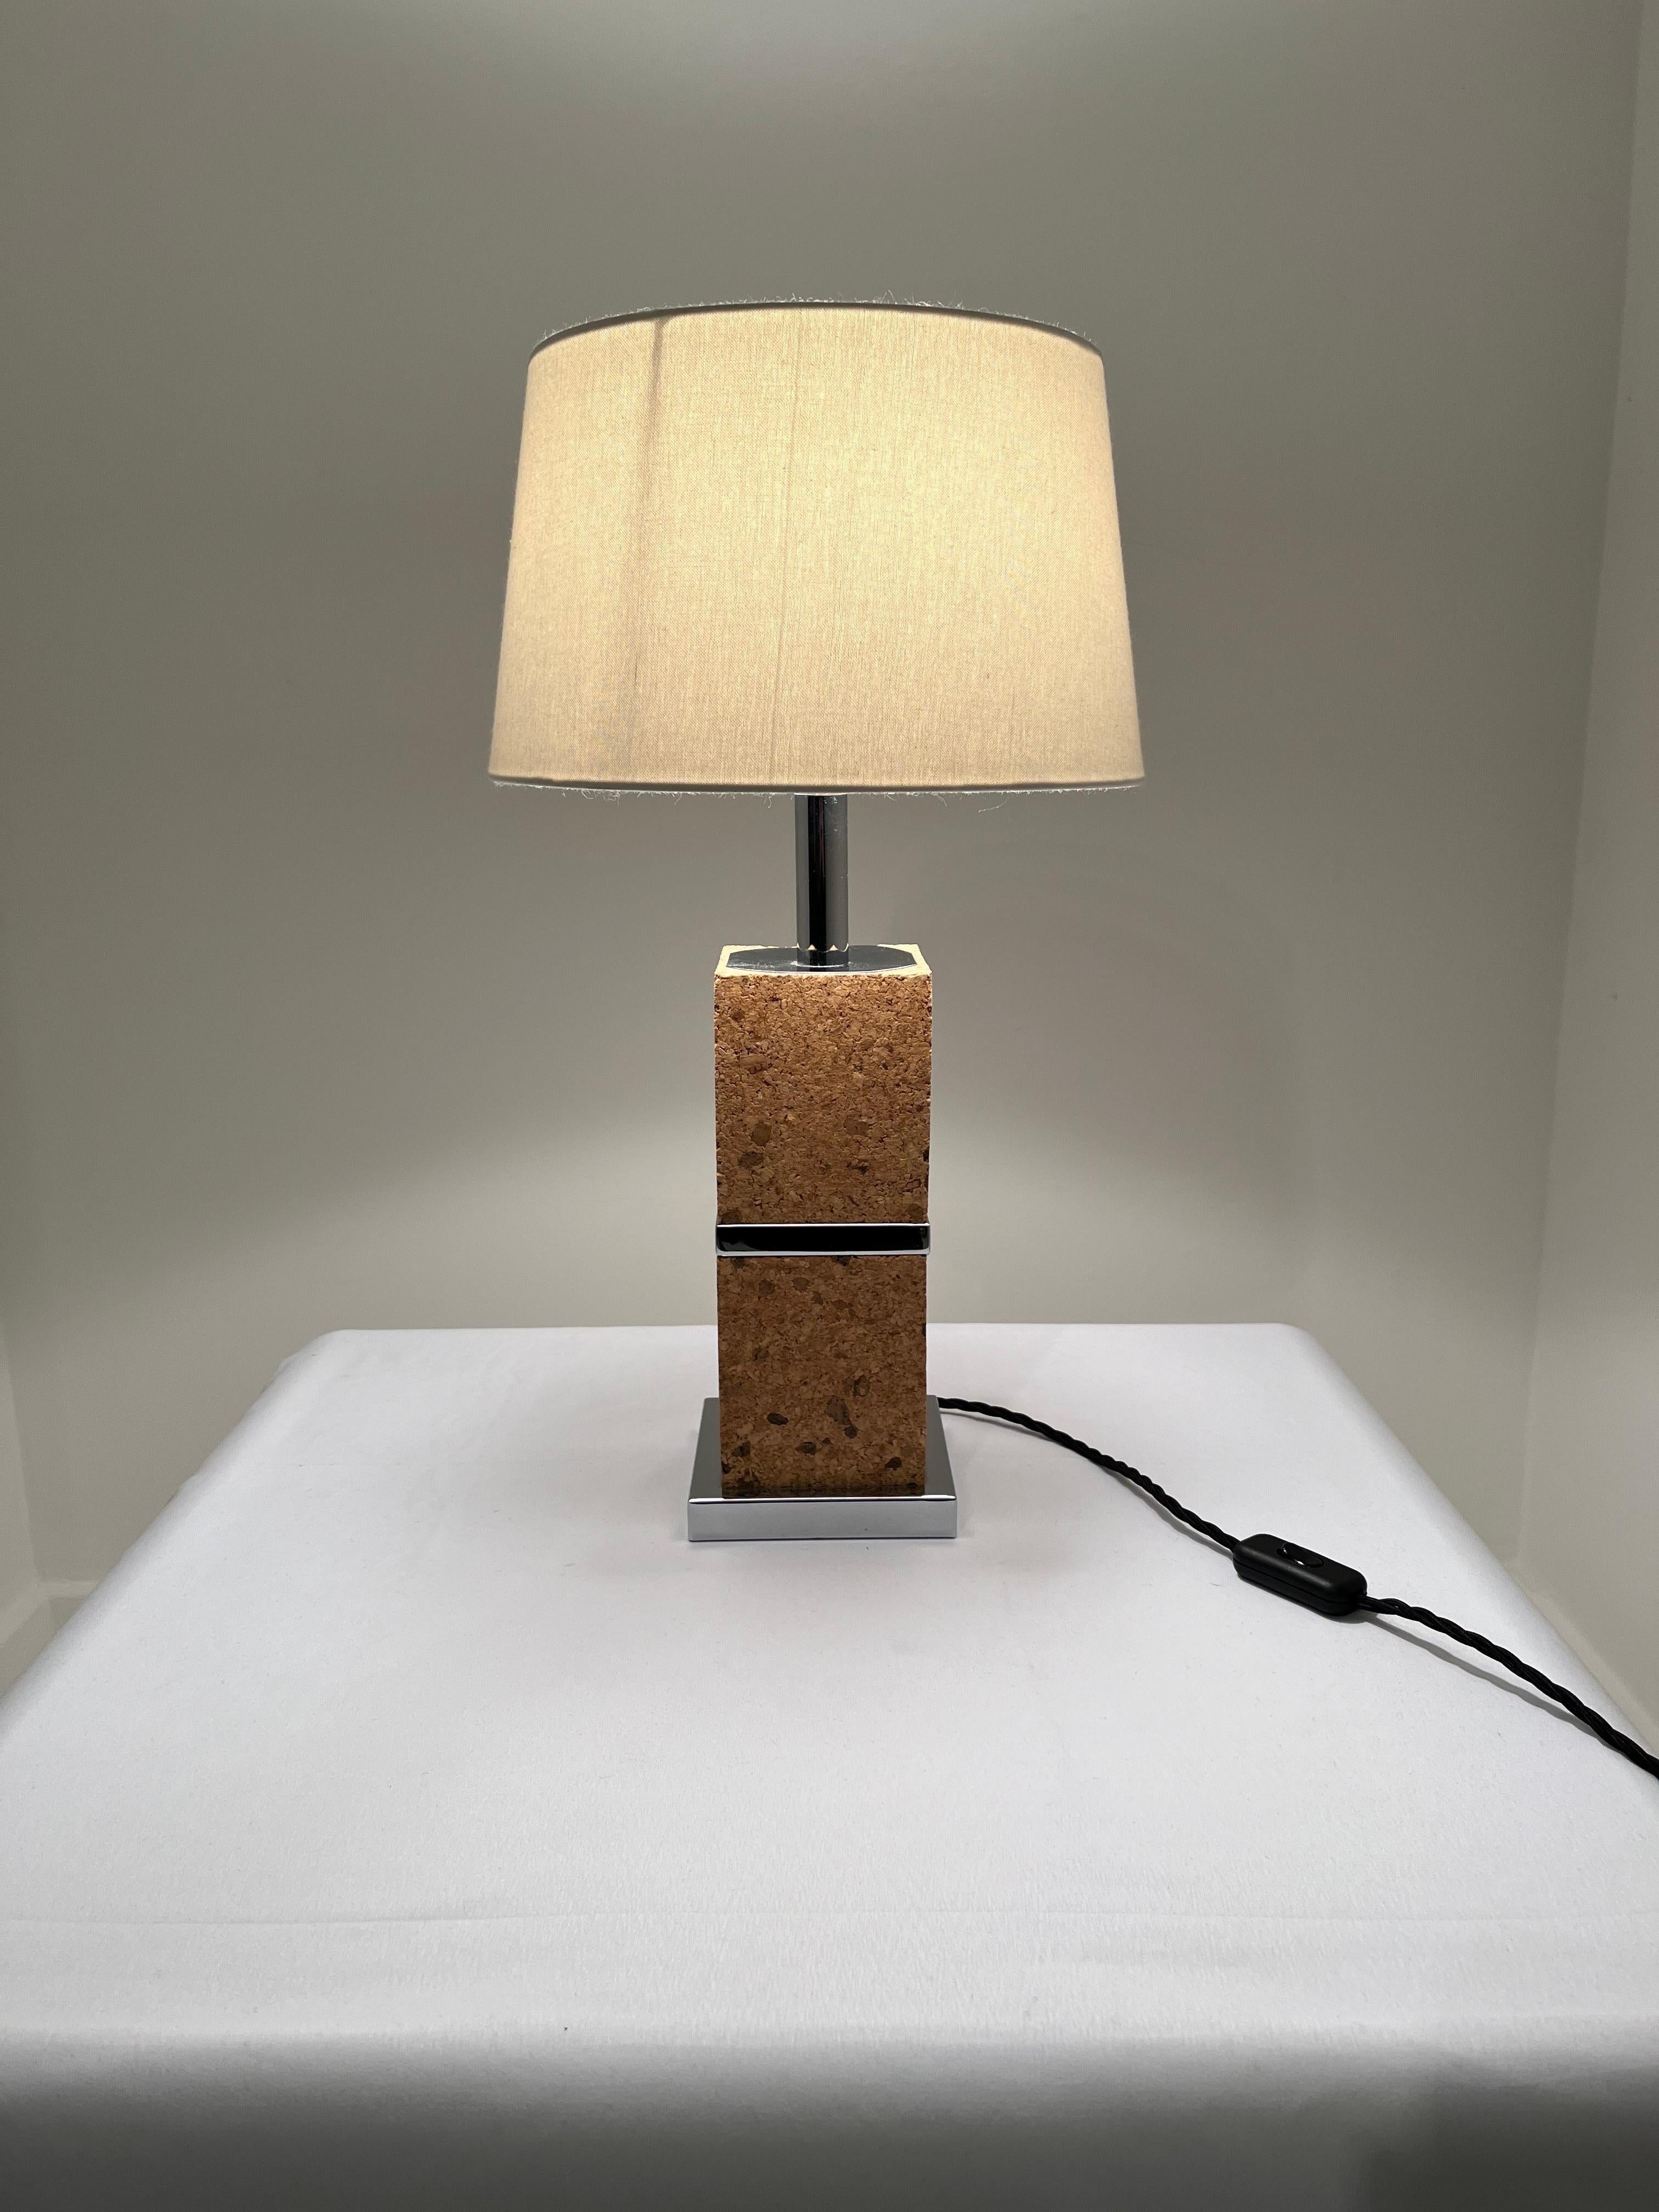 Lampe en liège chromée Frech 
By Design Modern des années 10970

Excellent état, comme illustré. 
Recâblé pour le Royaume-Uni 

